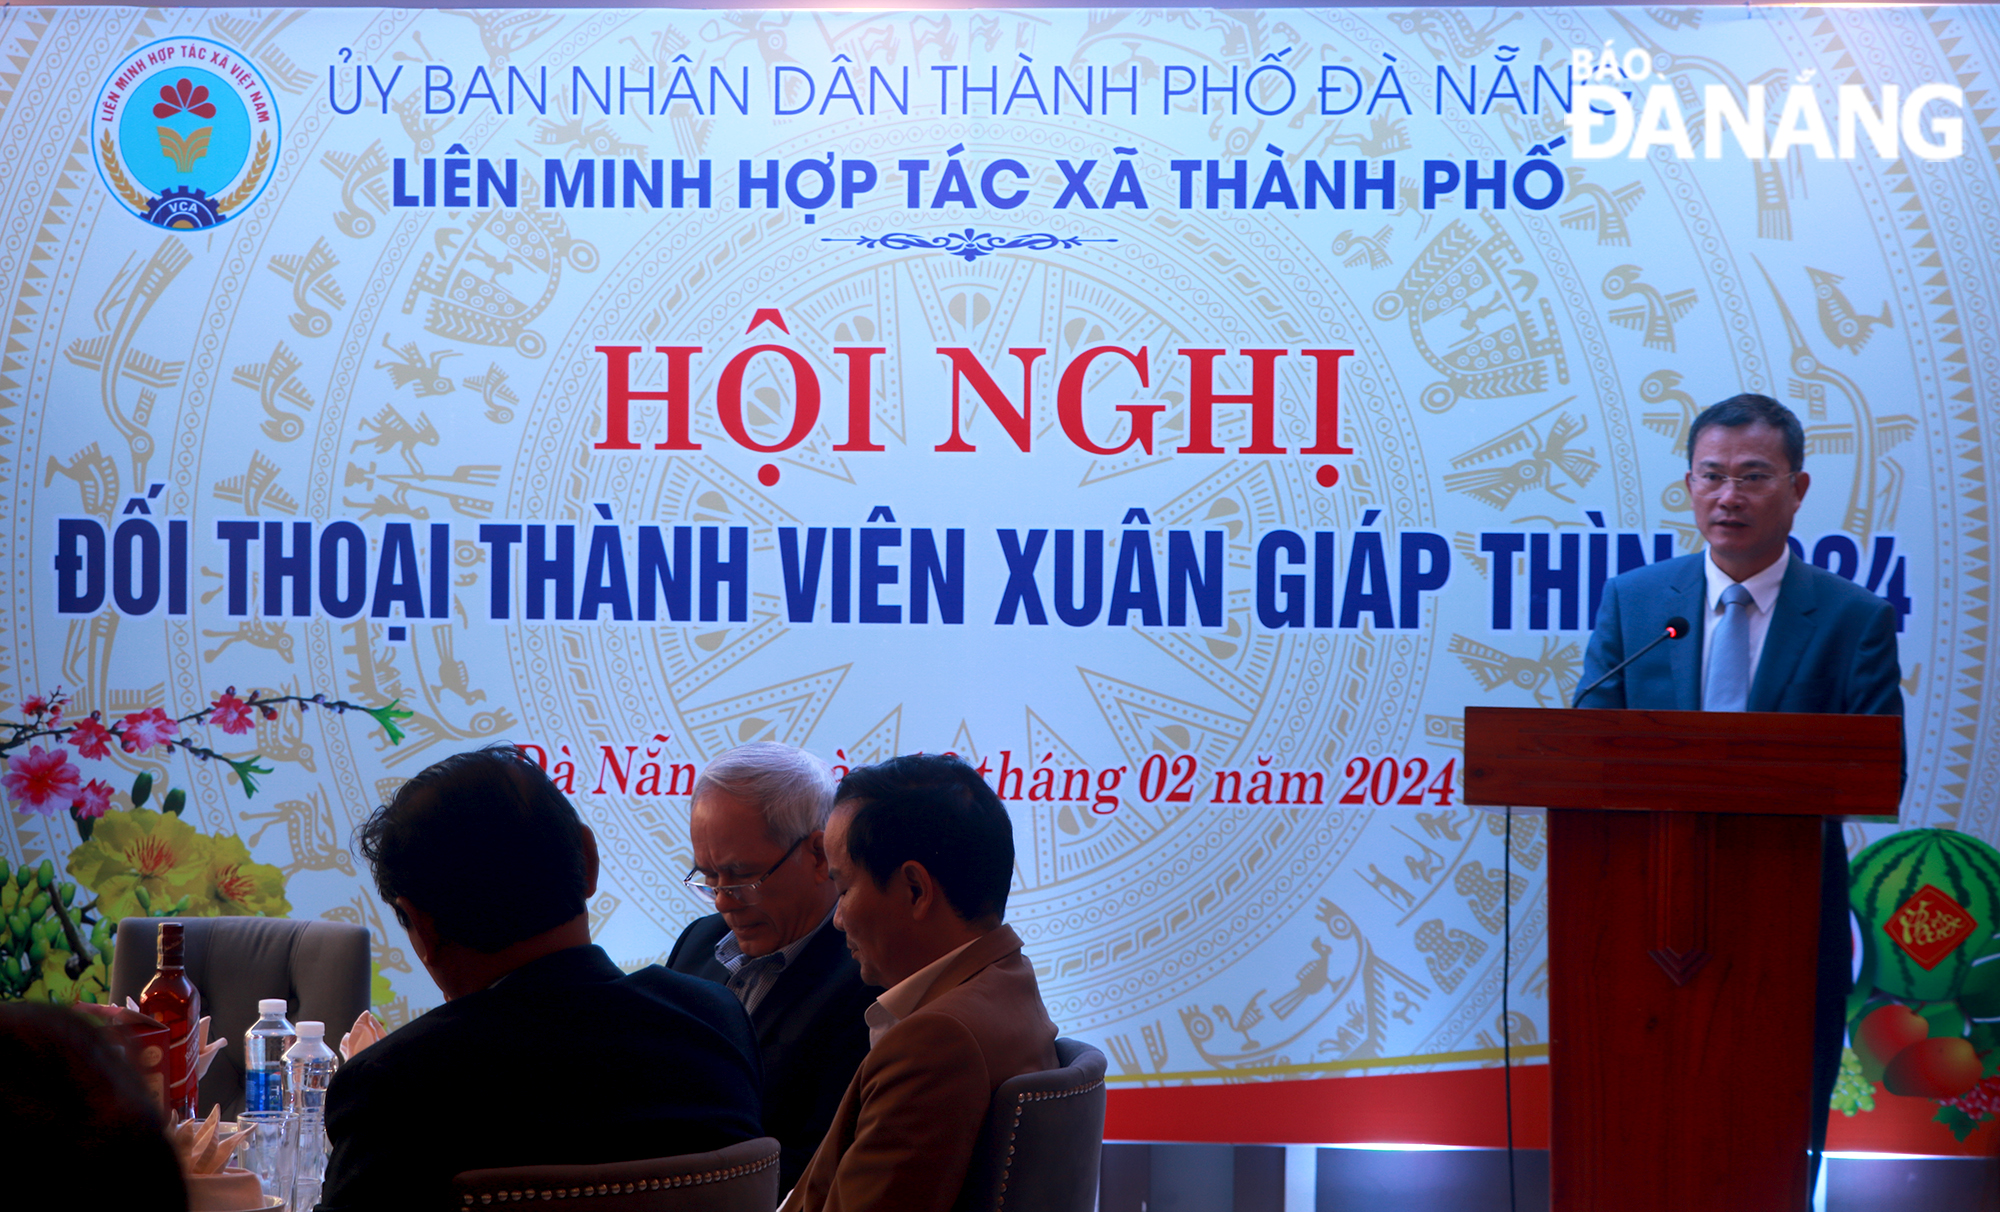 Liên minh Hợp tác xã thành phố Đà Nẵng tổ chức hội nghị 